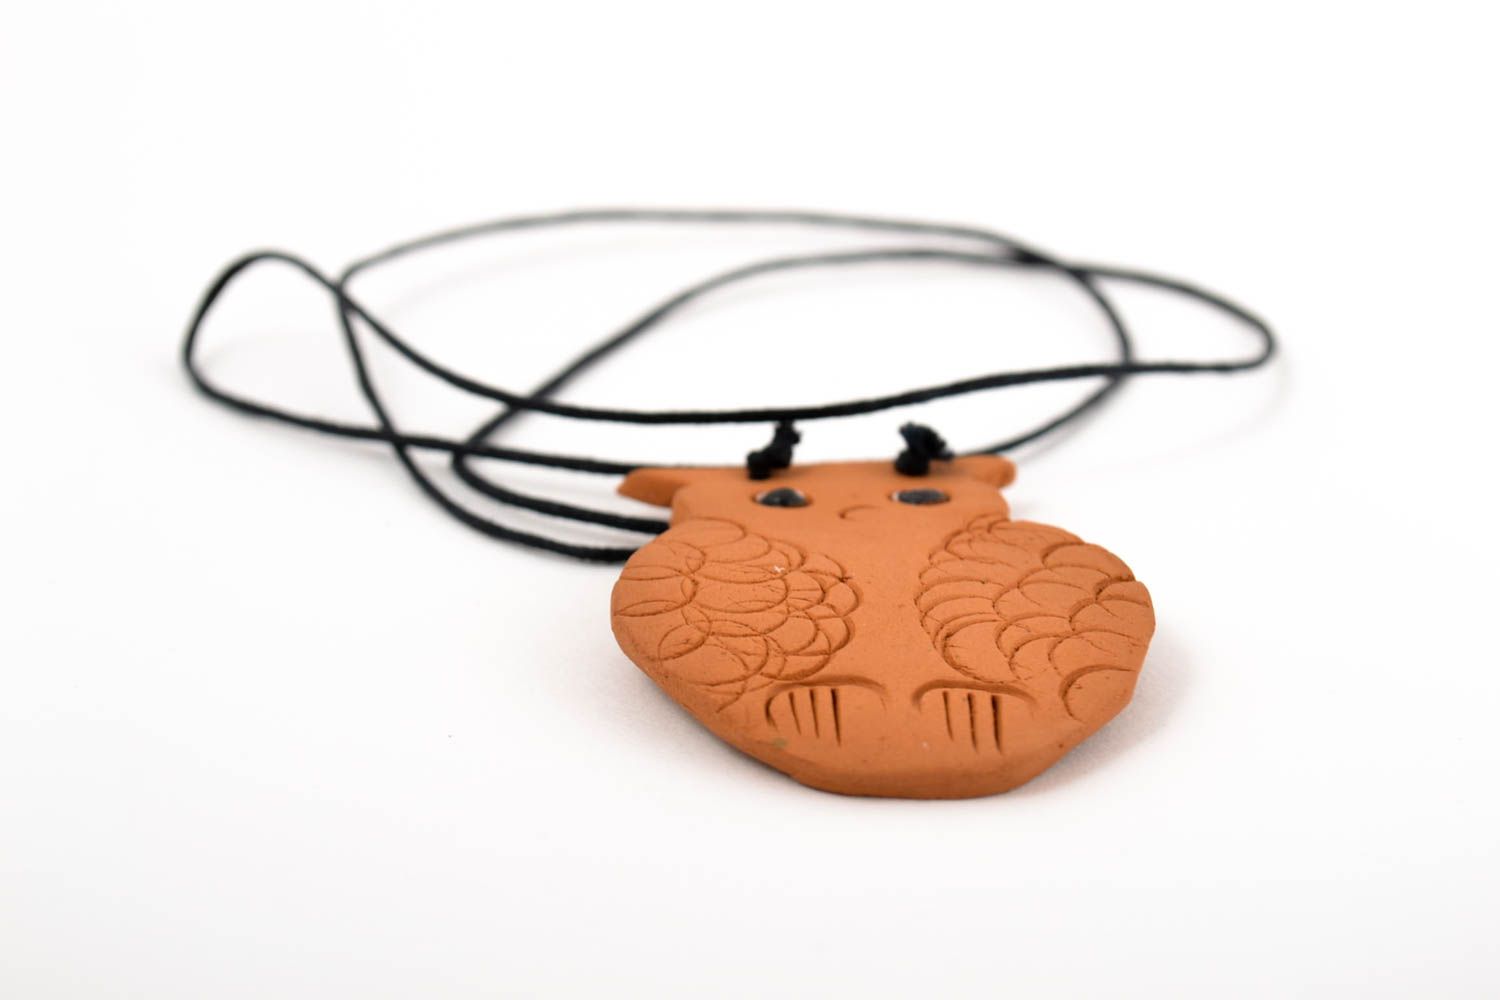 Handmade pendant unusual pendant for women gift for children designer accessory photo 1